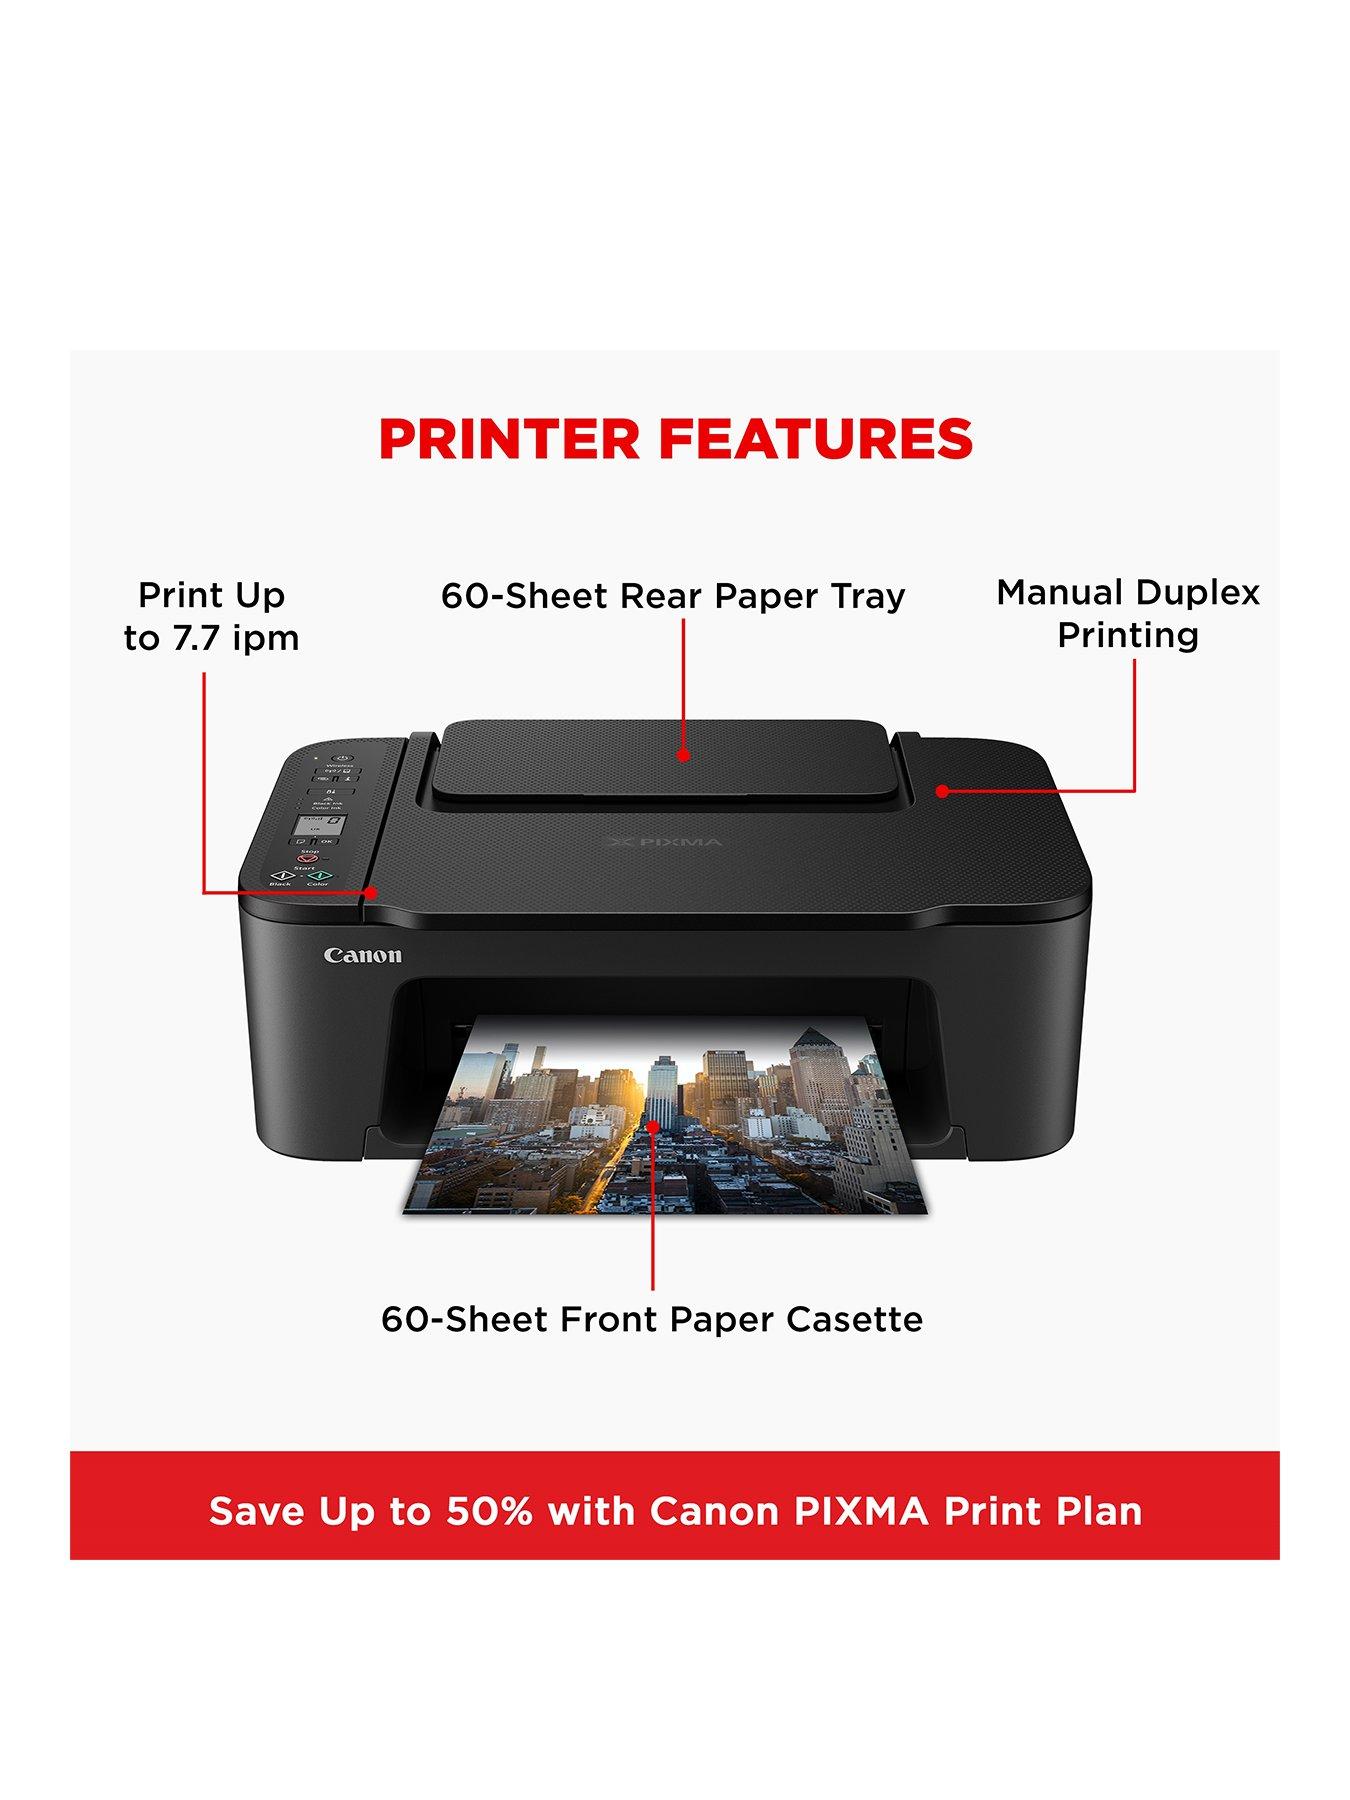 Canon PIXMA TS3550i All-in-One Wireless Wi-Fi Printer - Black